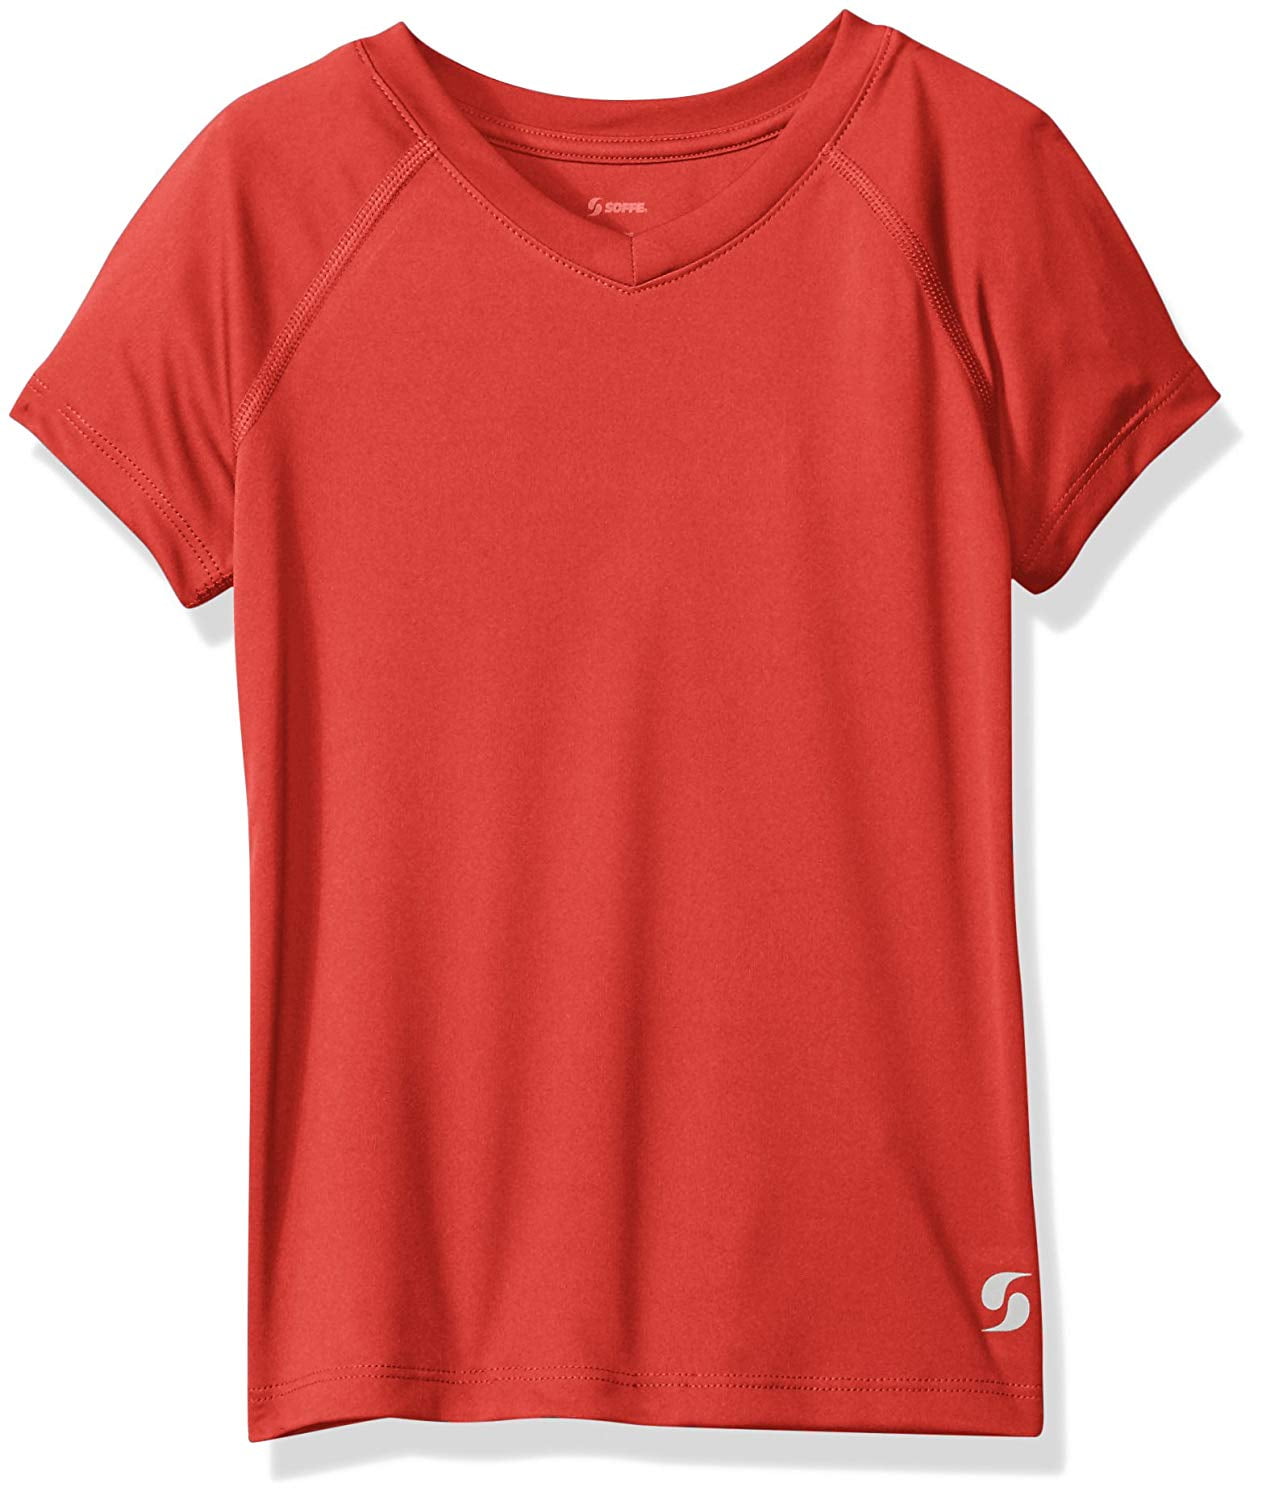 RedBrowm The T-Shirt Blouse Girls Shirts PatternedSummer Tops